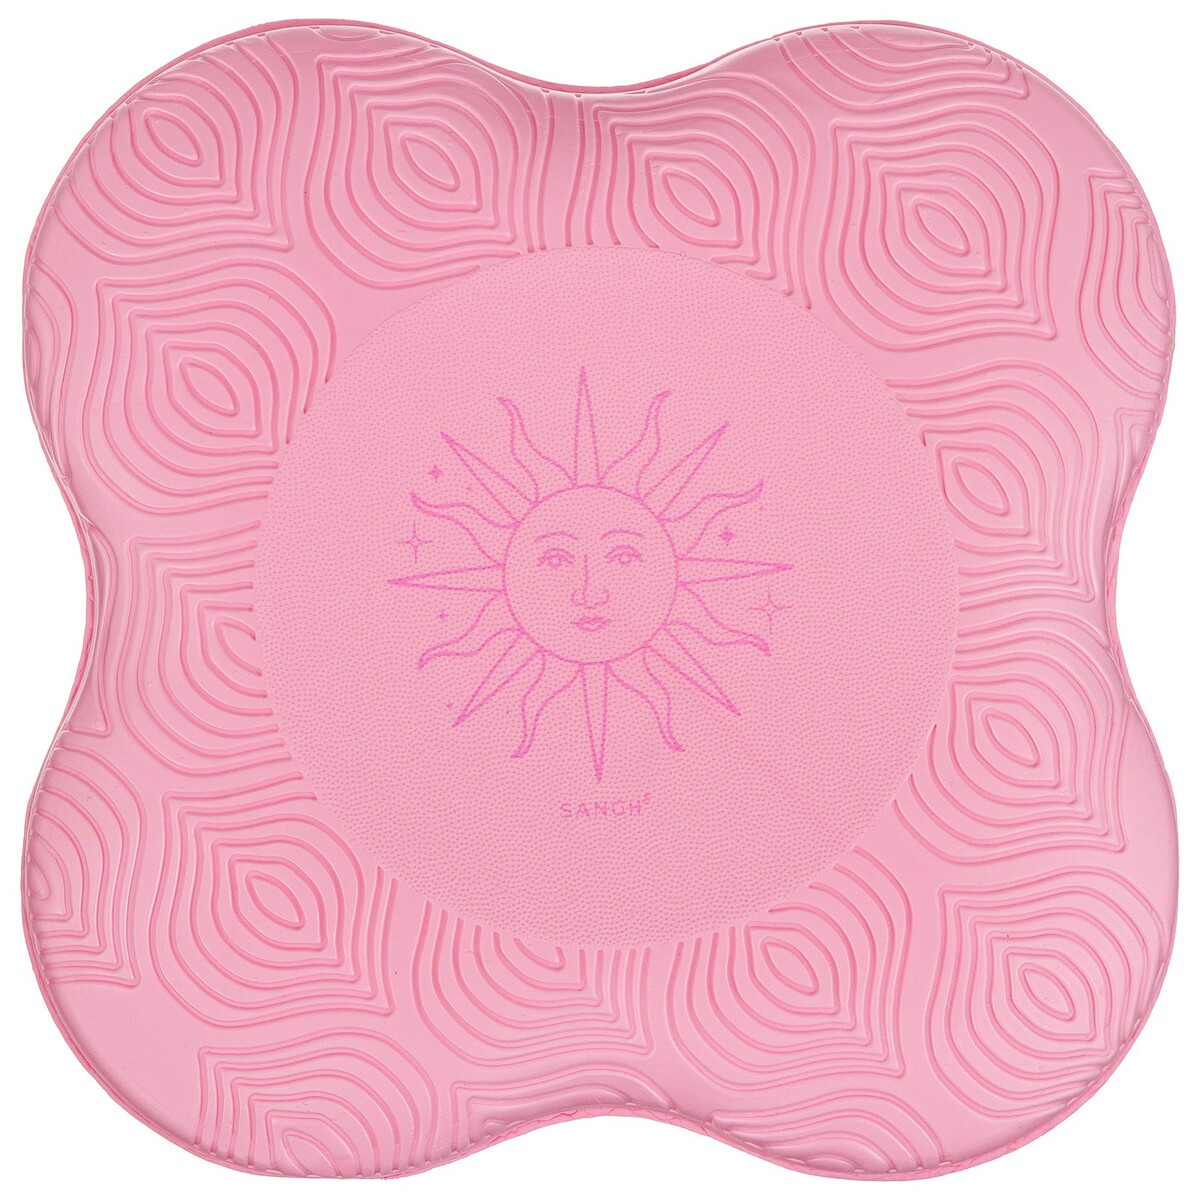 Коврик под колени для йоги sangh sun, 20х20 см, цвет розовый коврик для ванной 50 х 70 см sofi de marko carmella розовый